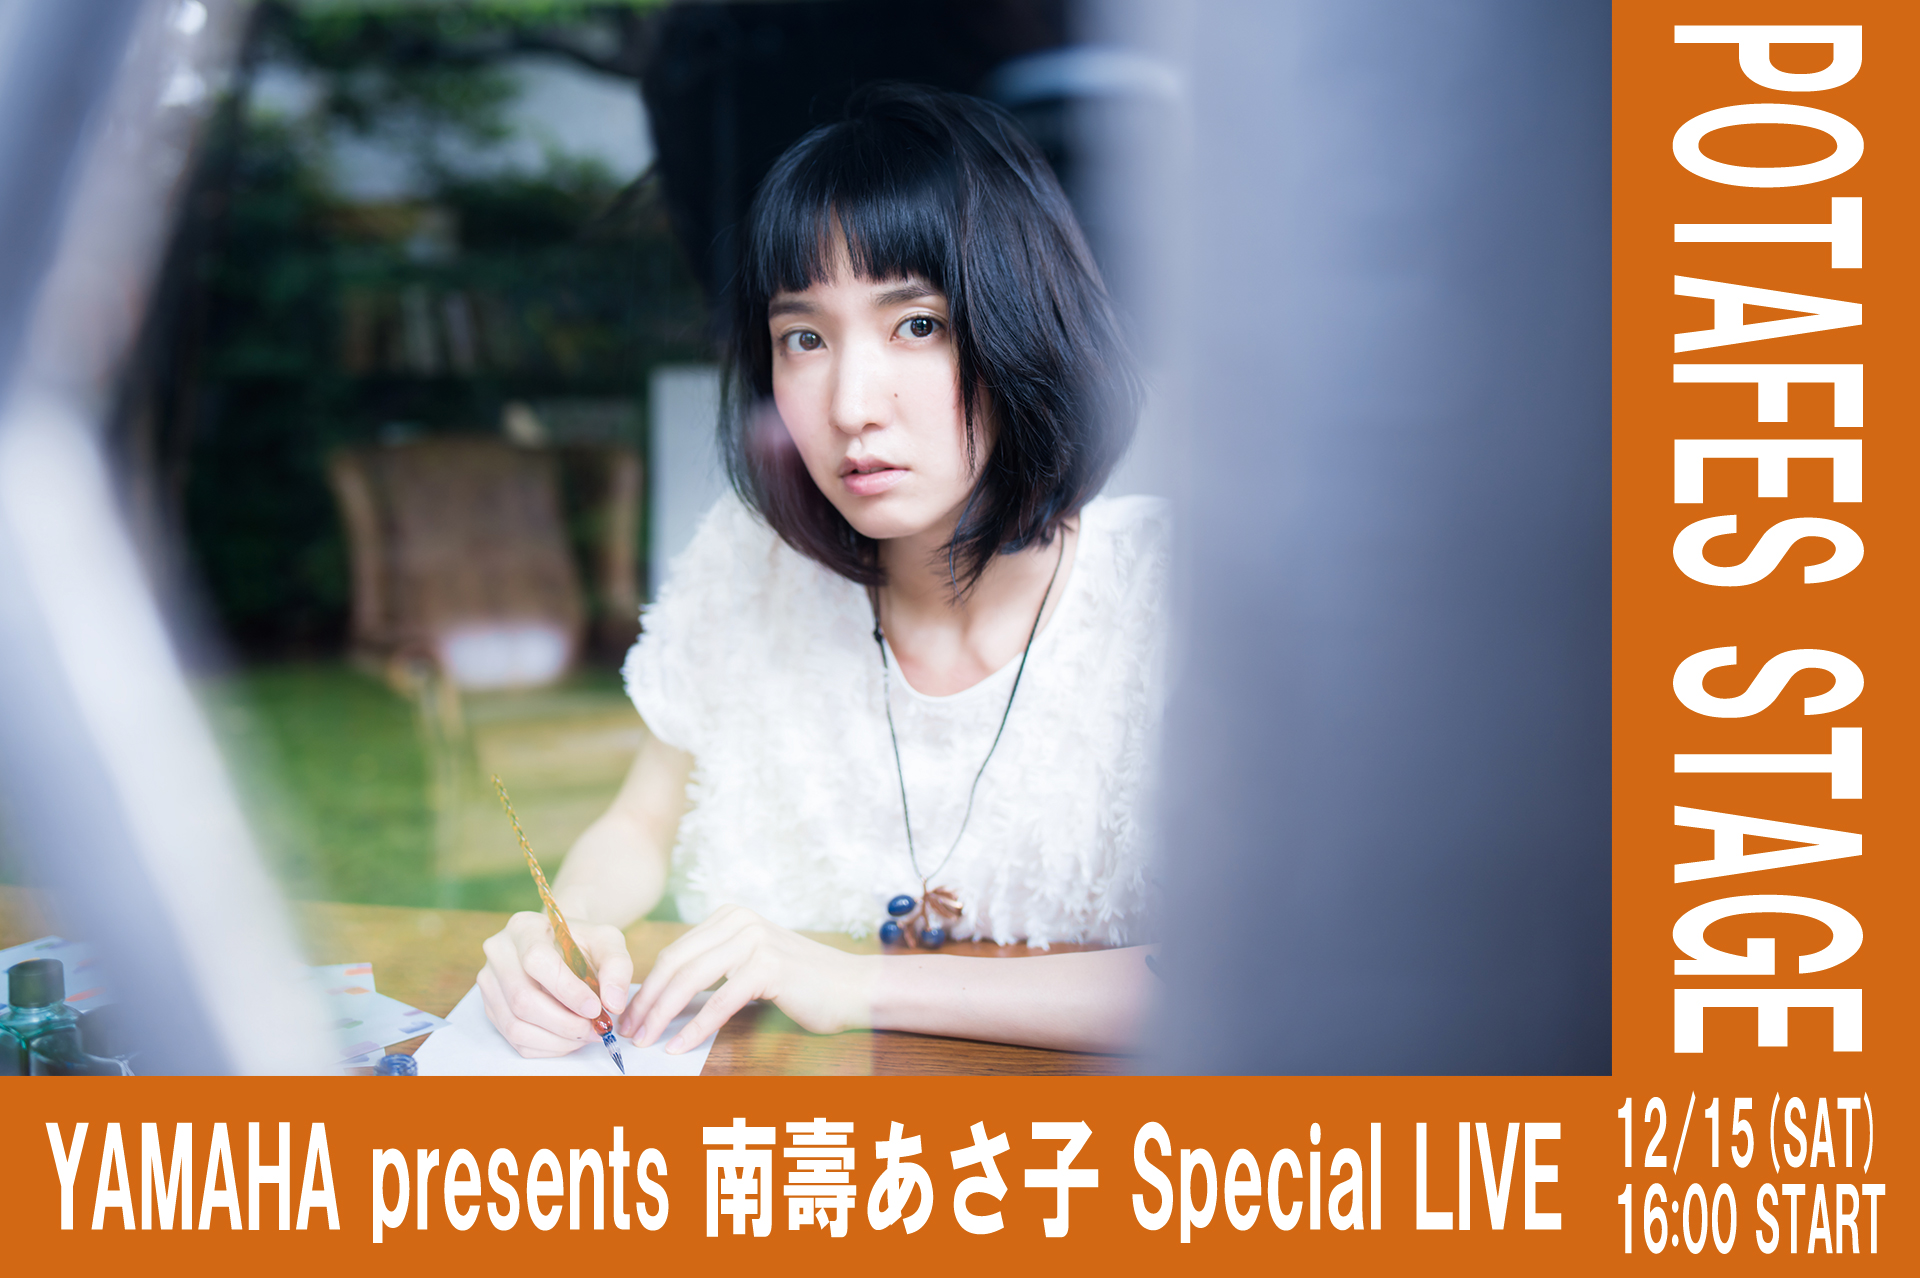 【ステージ情報】YAMAHA presents 南壽 あさ子 Special LIVE